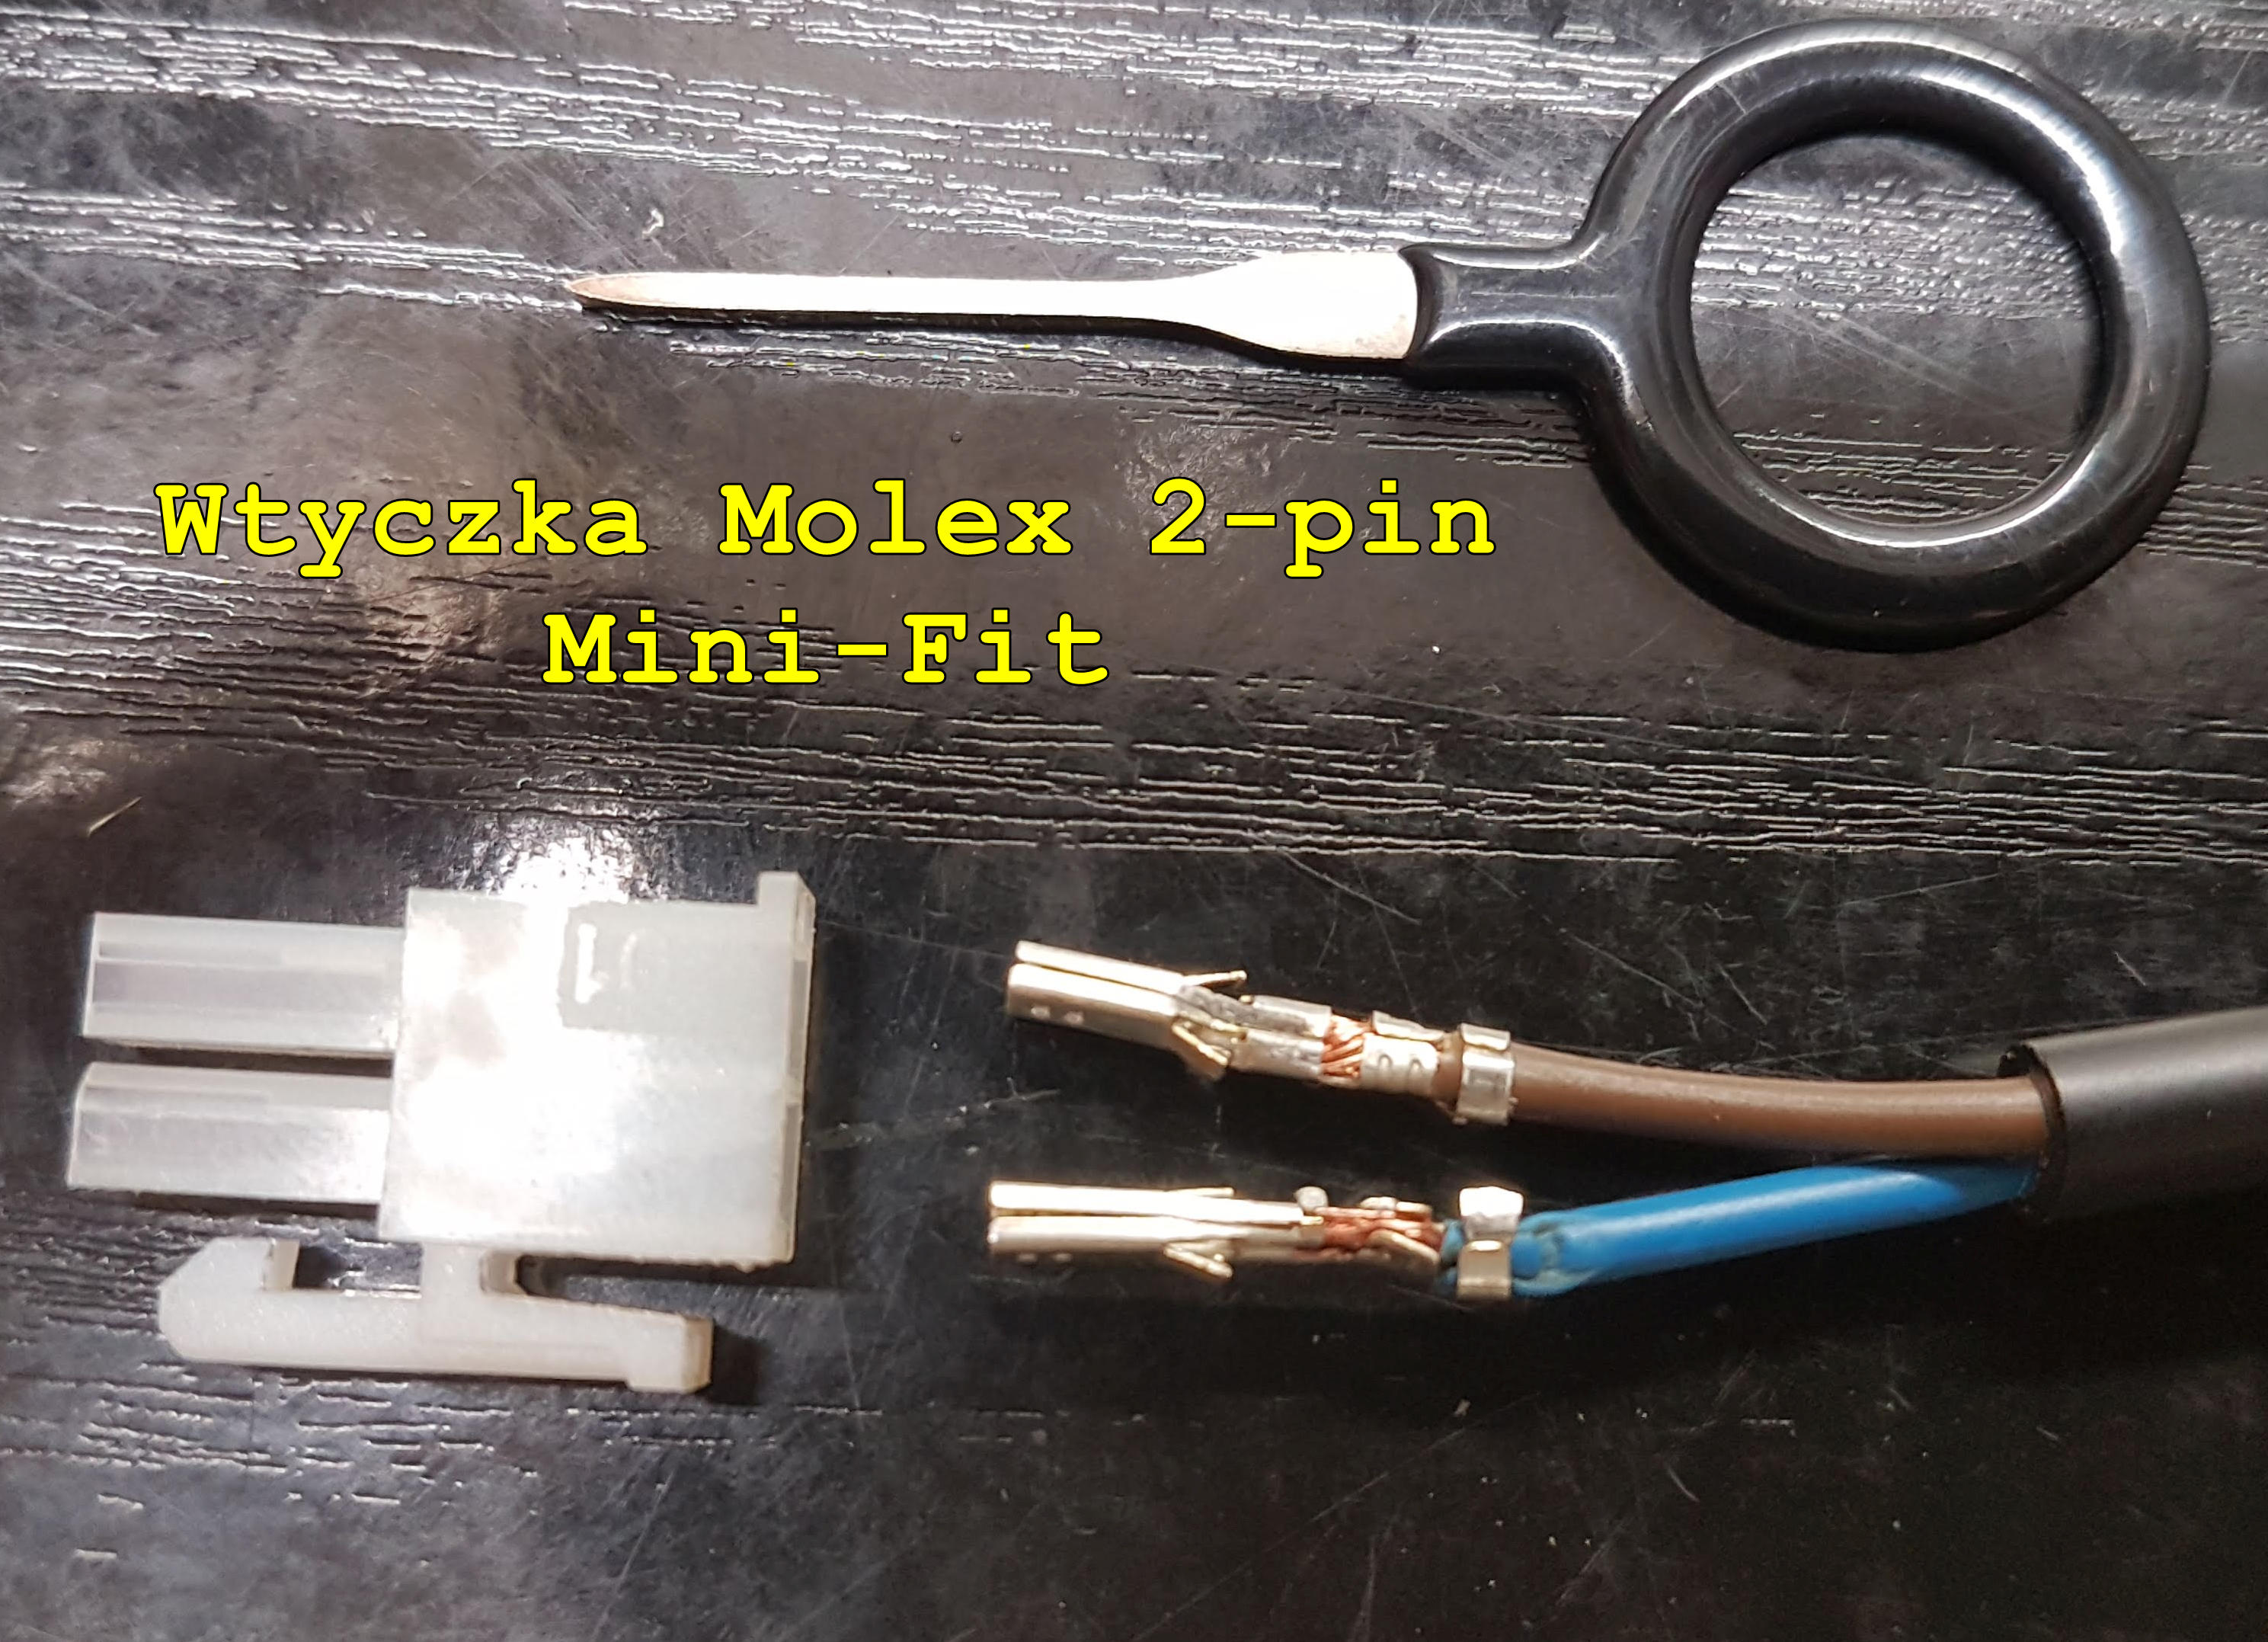 Wtyczka Molex 2-pin Mini-Fit.jpg